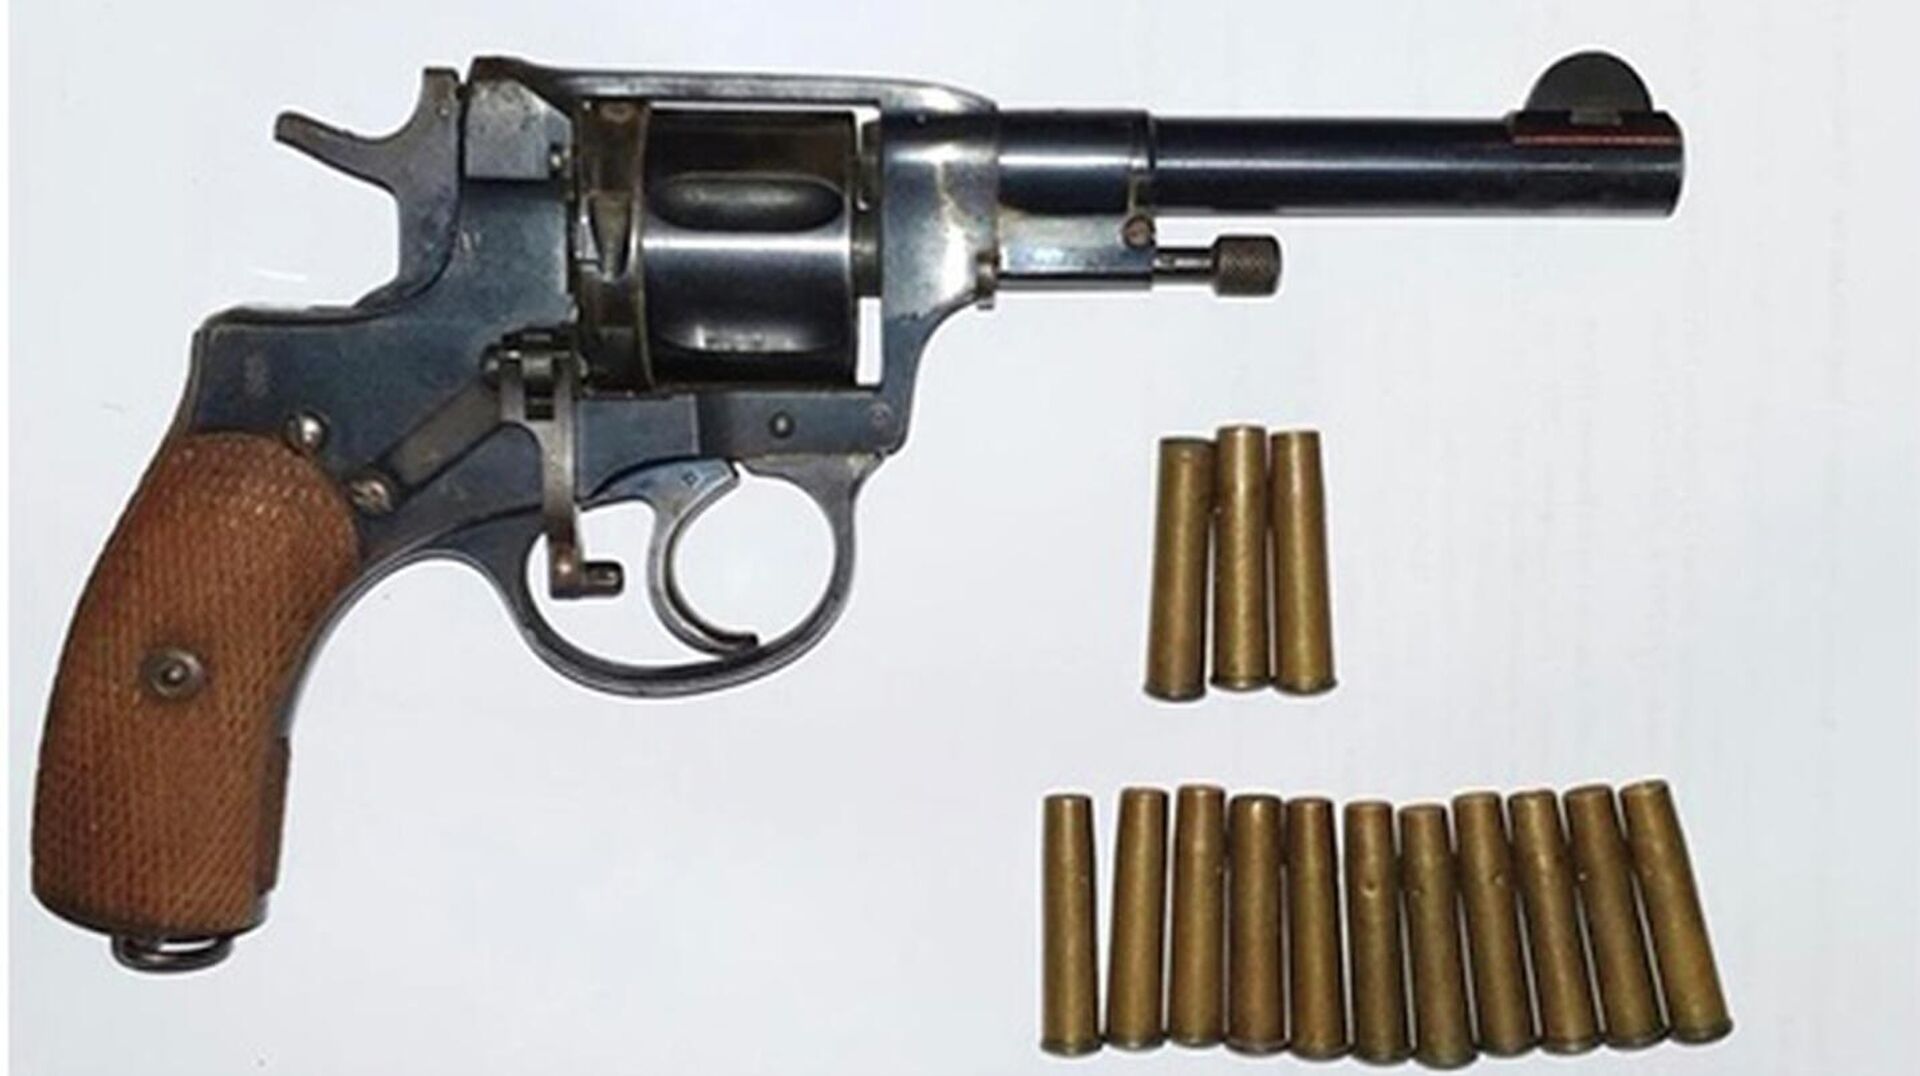 Боевой револьвер Наган (7,62 мм), произведенный в 1917 году, и 14 боевых патронов - Sputnik Узбекистан, 1920, 22.08.2021